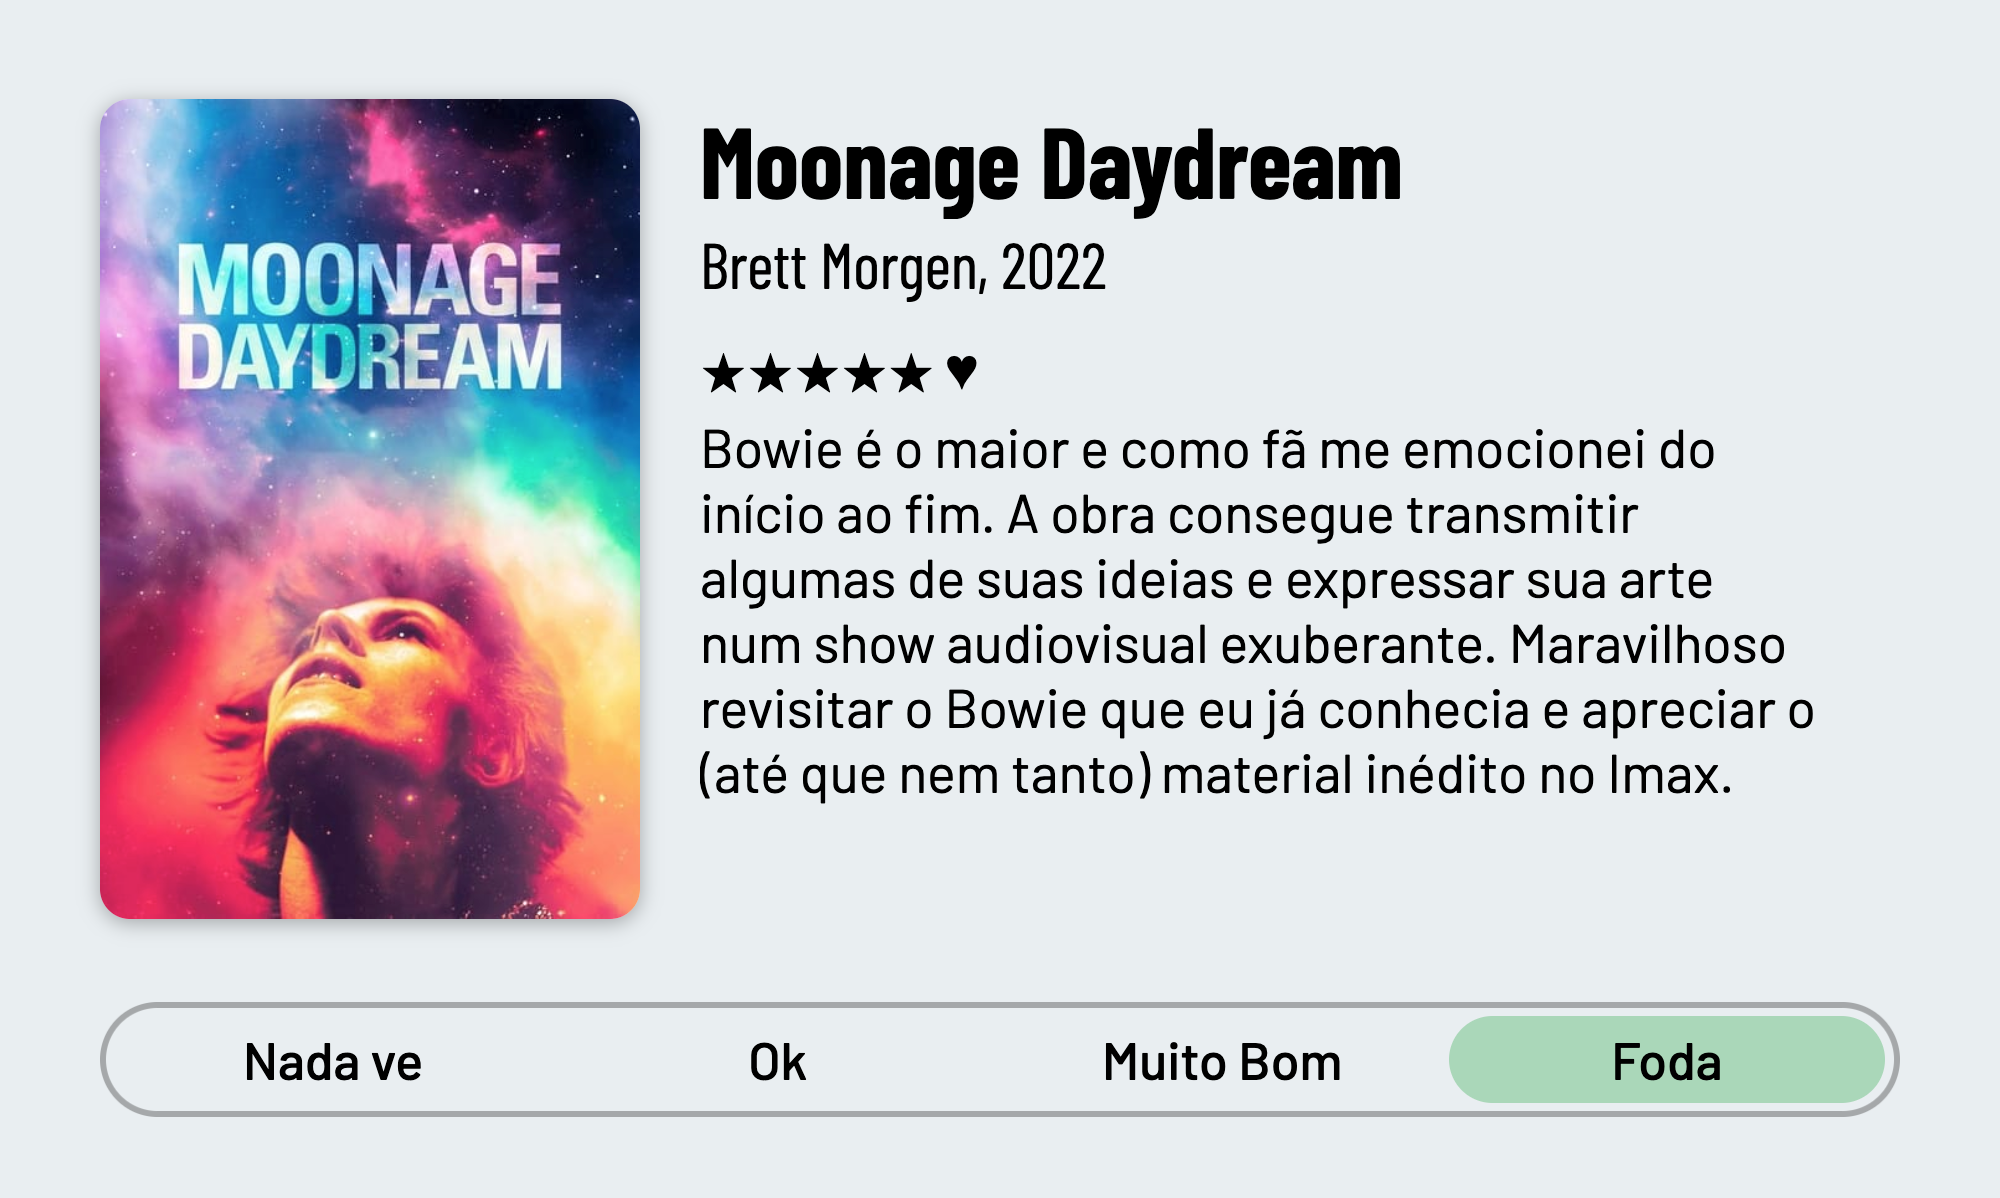 QuickReview do filme "Moonage Daydream" de Brett Morgen com 5 estrelas que diz: "Bowie é o maior e como fã me emocionei do início ao fim. A obra consegue transmitir algumas de suas ideias e expressar sua arte num show audiovisual exuberante. Maravilhoso revisitar o Bowie que eu já conhecia e apreciar o (até que nem tanto) material inédito no Imax."